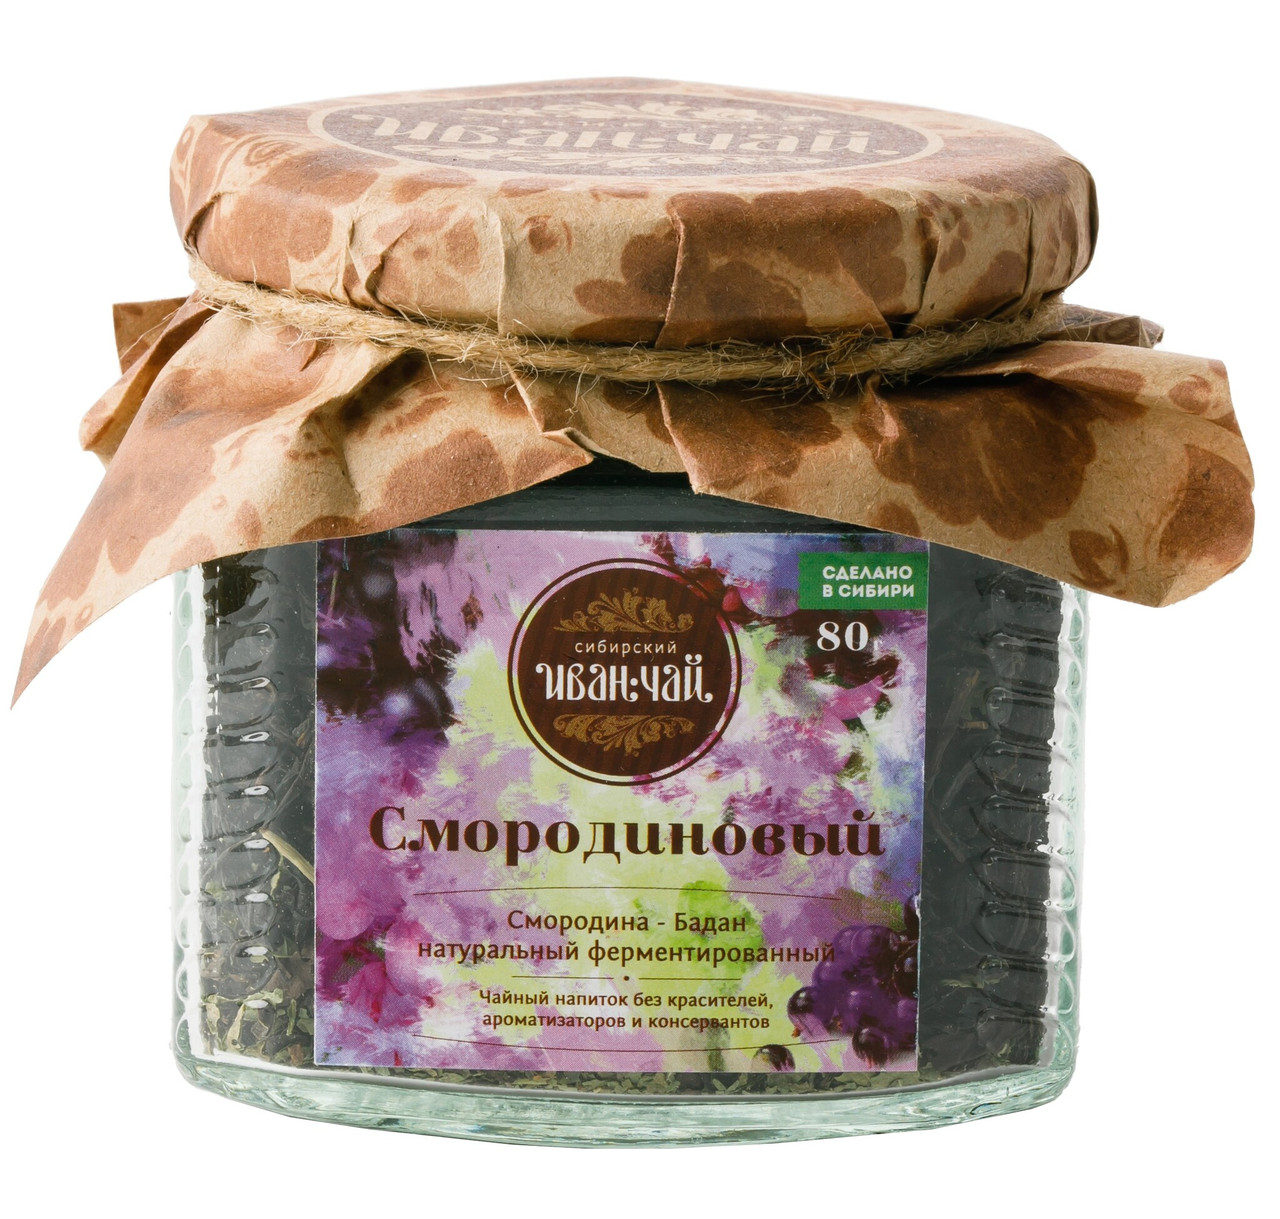 Сибирский Иван чай "Смородиновый", 80 гр стеклобанка